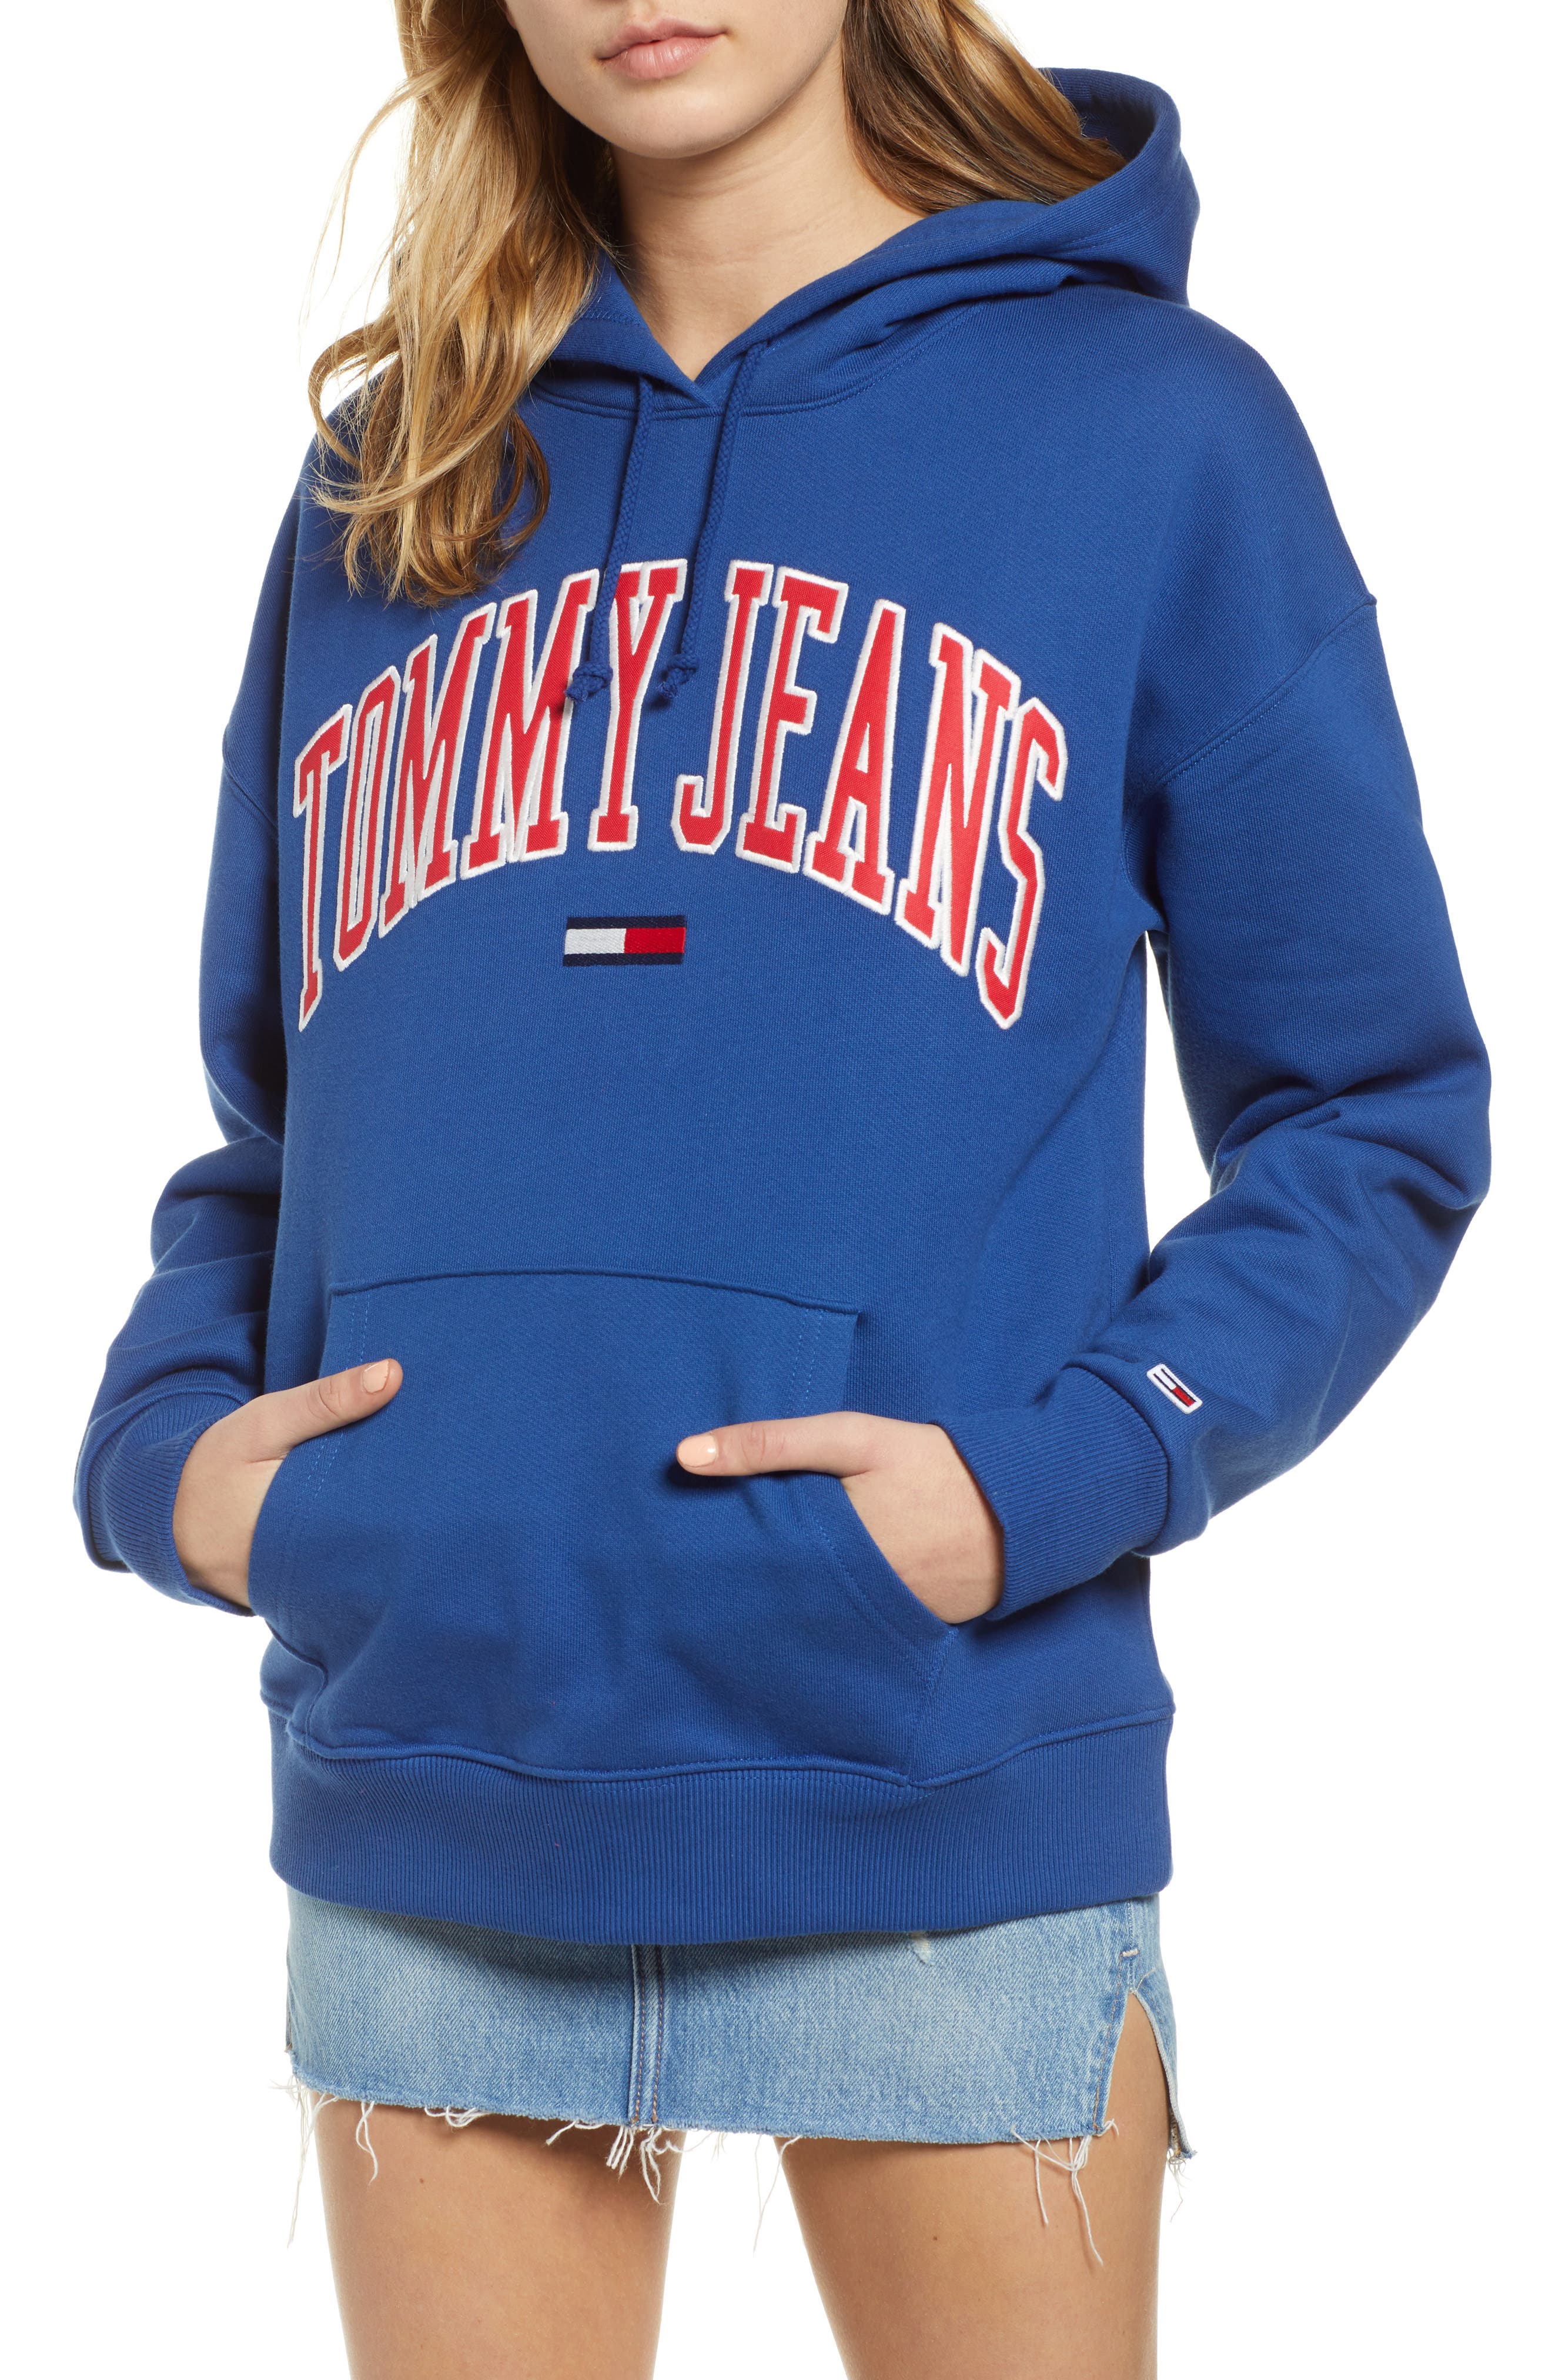 tommy logo hoodie